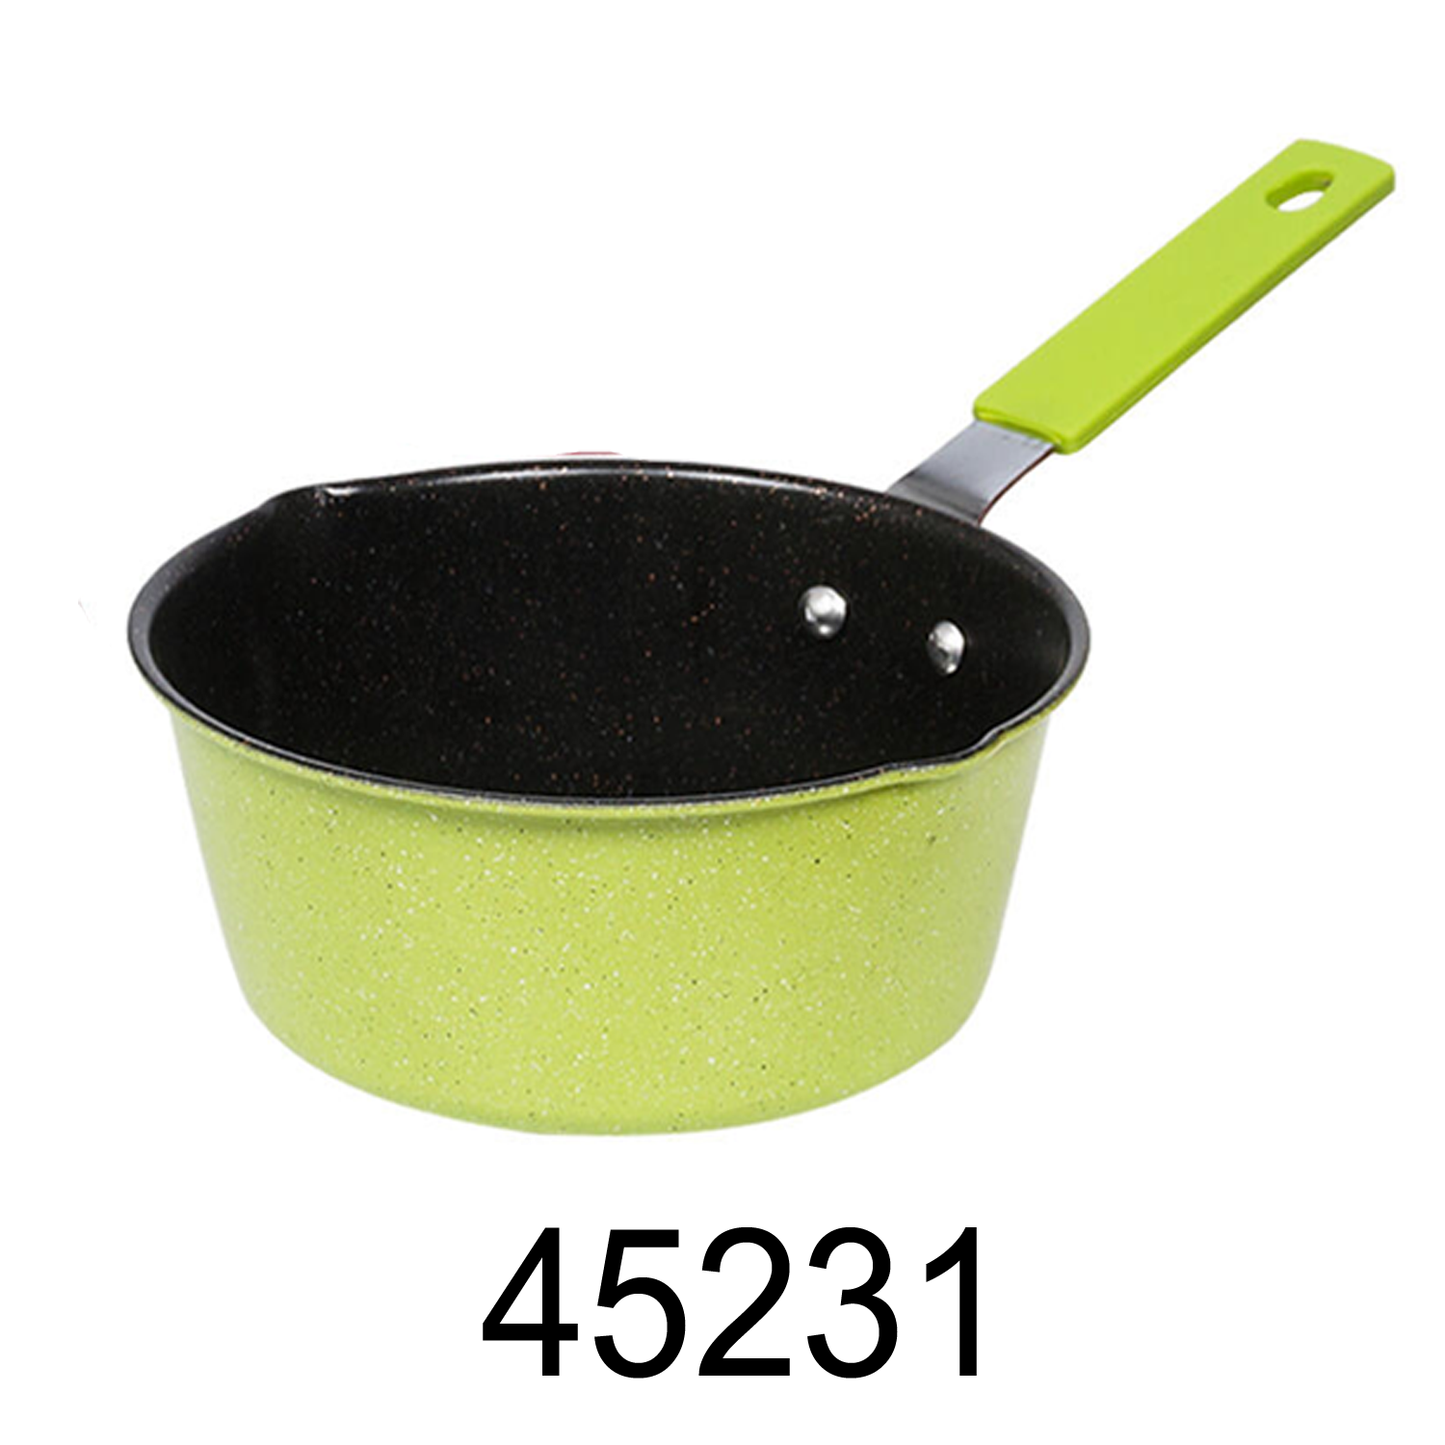 5.75" Sauce Pan-Green